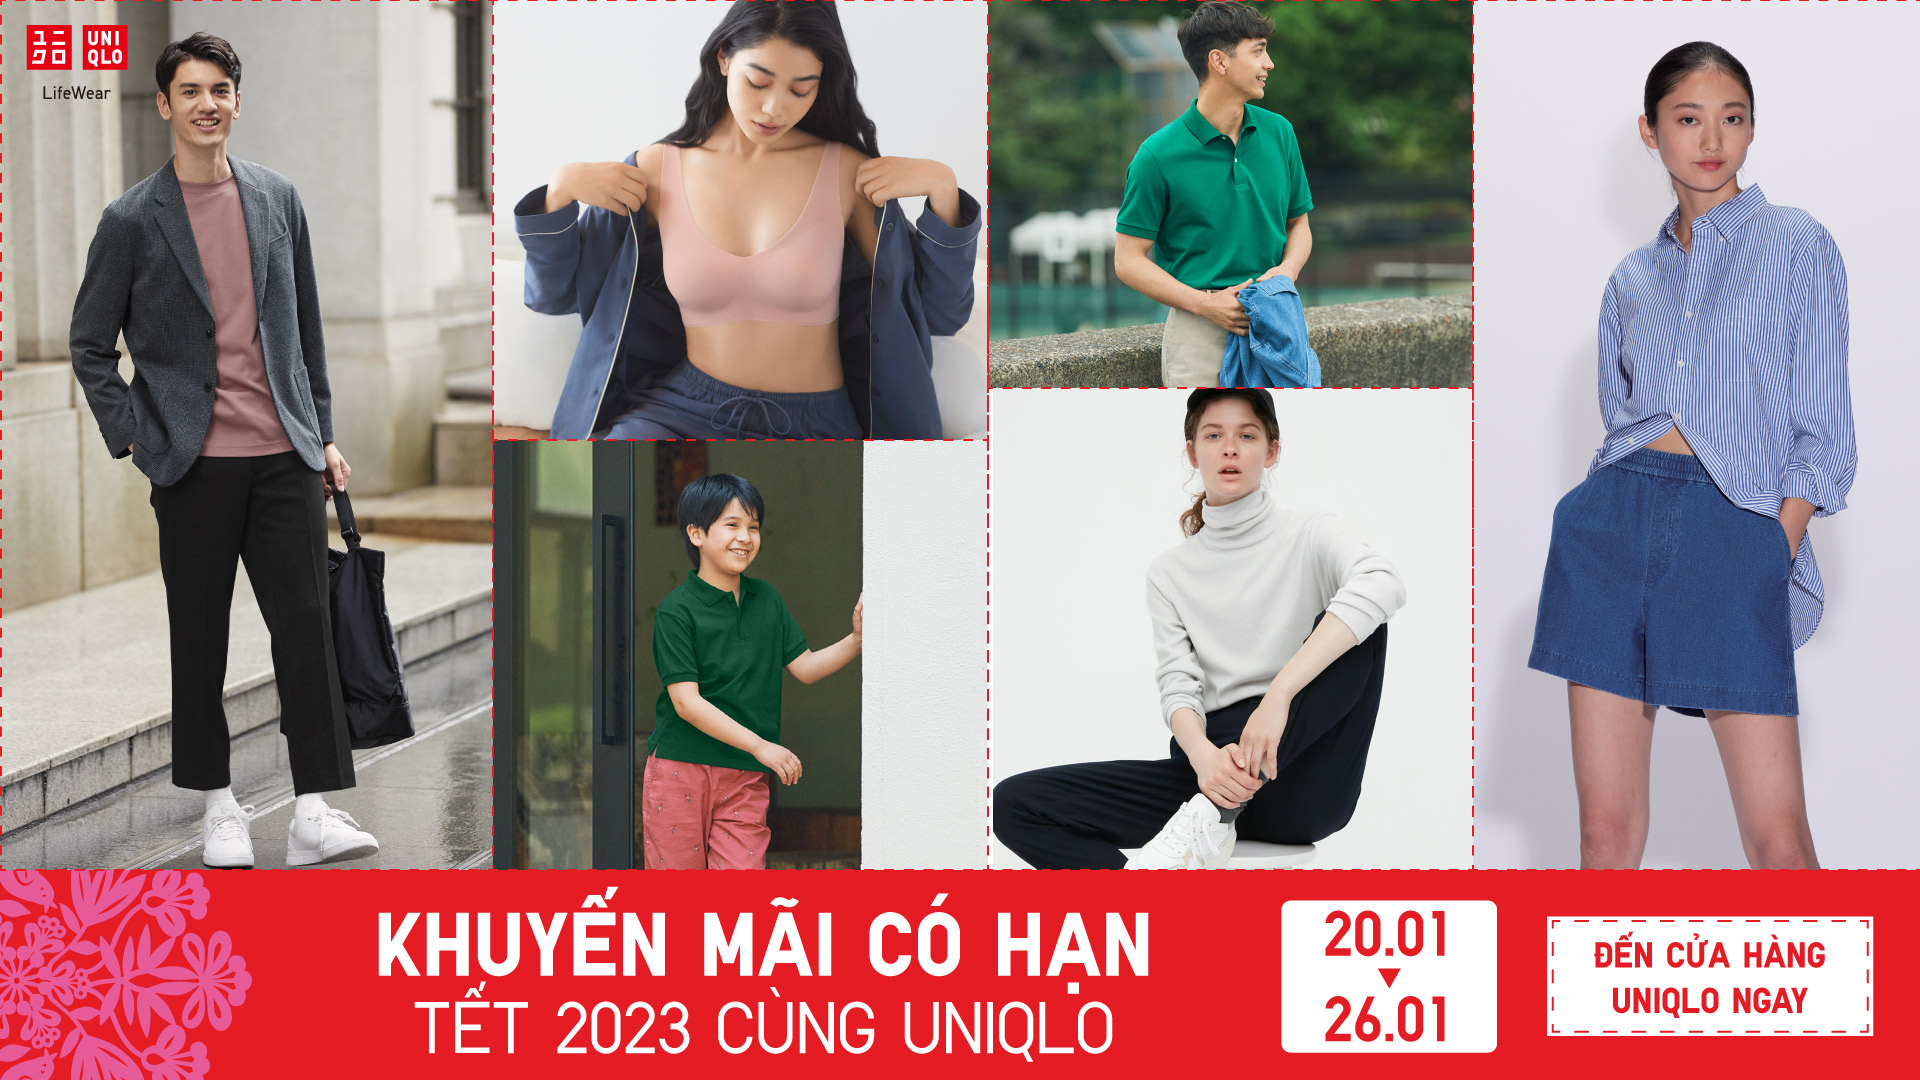 Uniqlo chính thức khai trương cửa hàng tại Việt Nam nhiều sản phẩm khuyến  mại giá